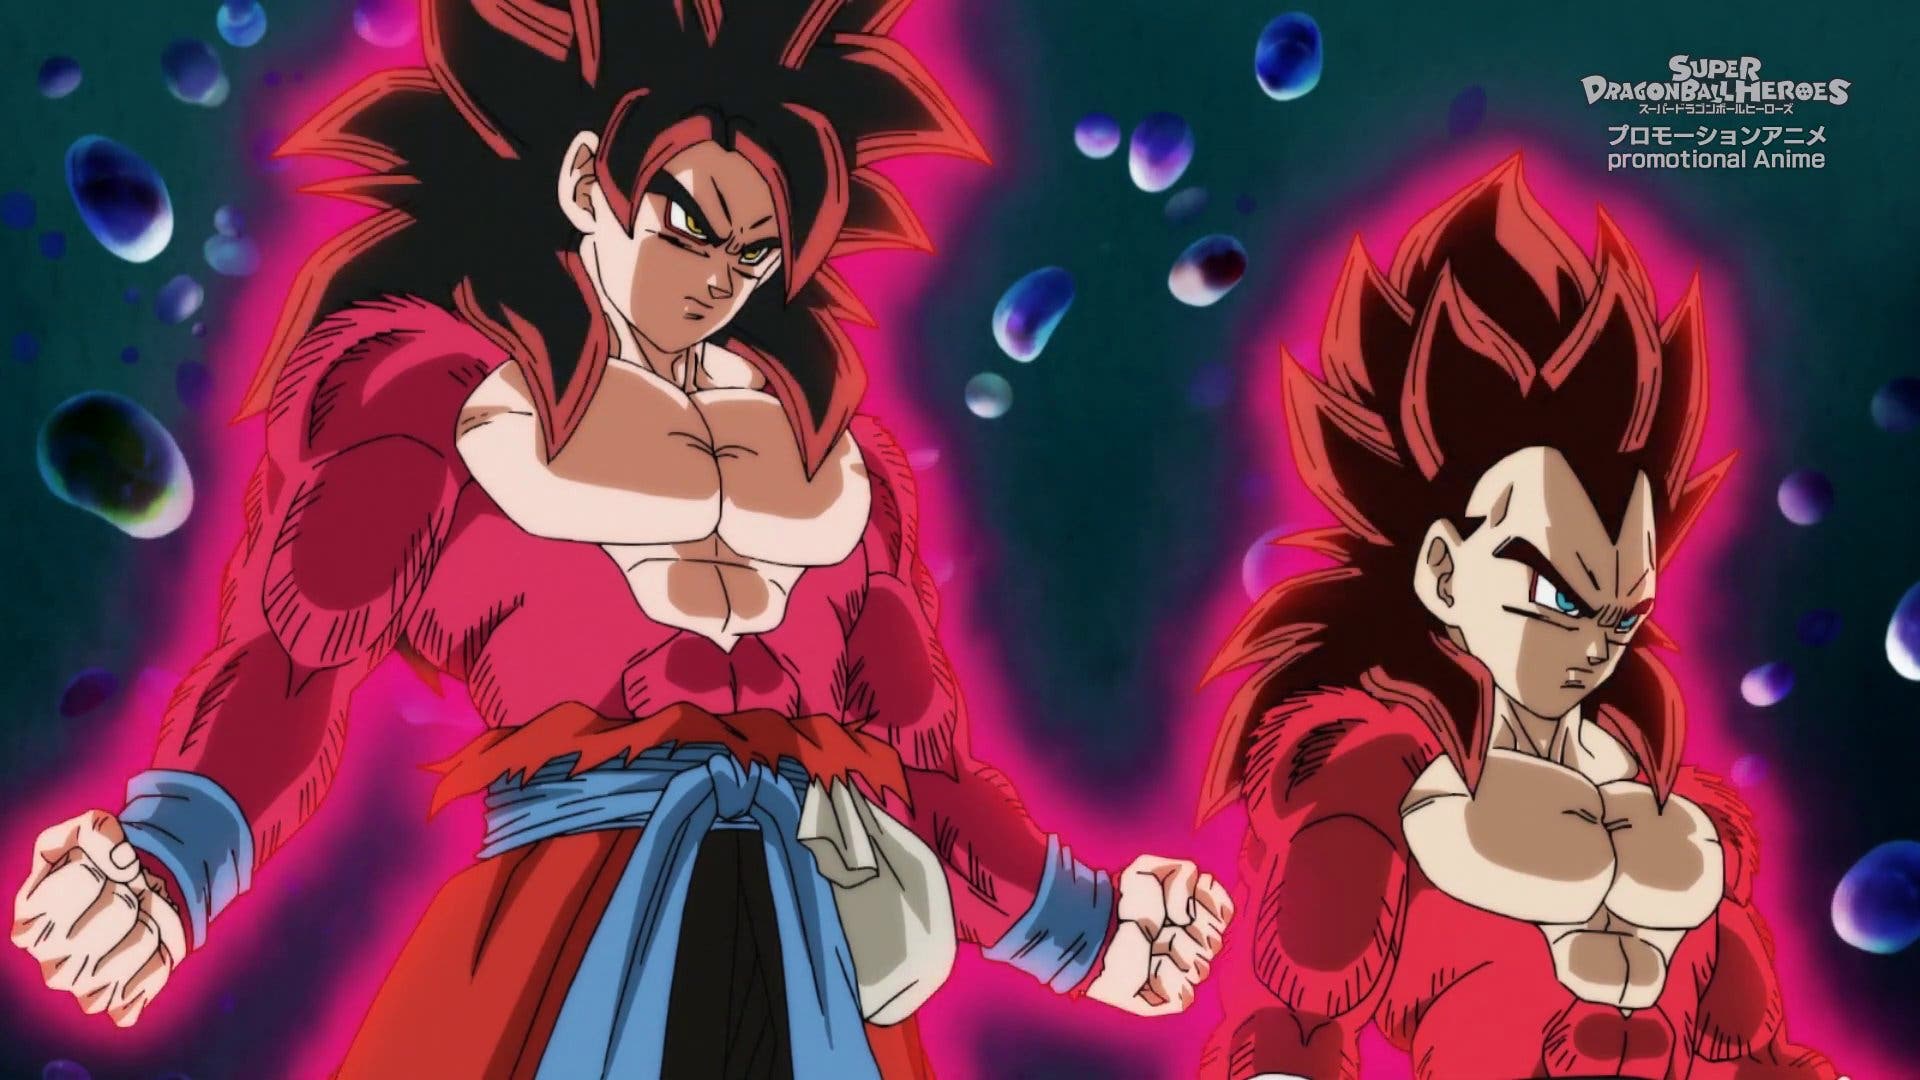 Dos héroes del UCM se convierten en personajes de Dragon Ball gracias a un  fan-art